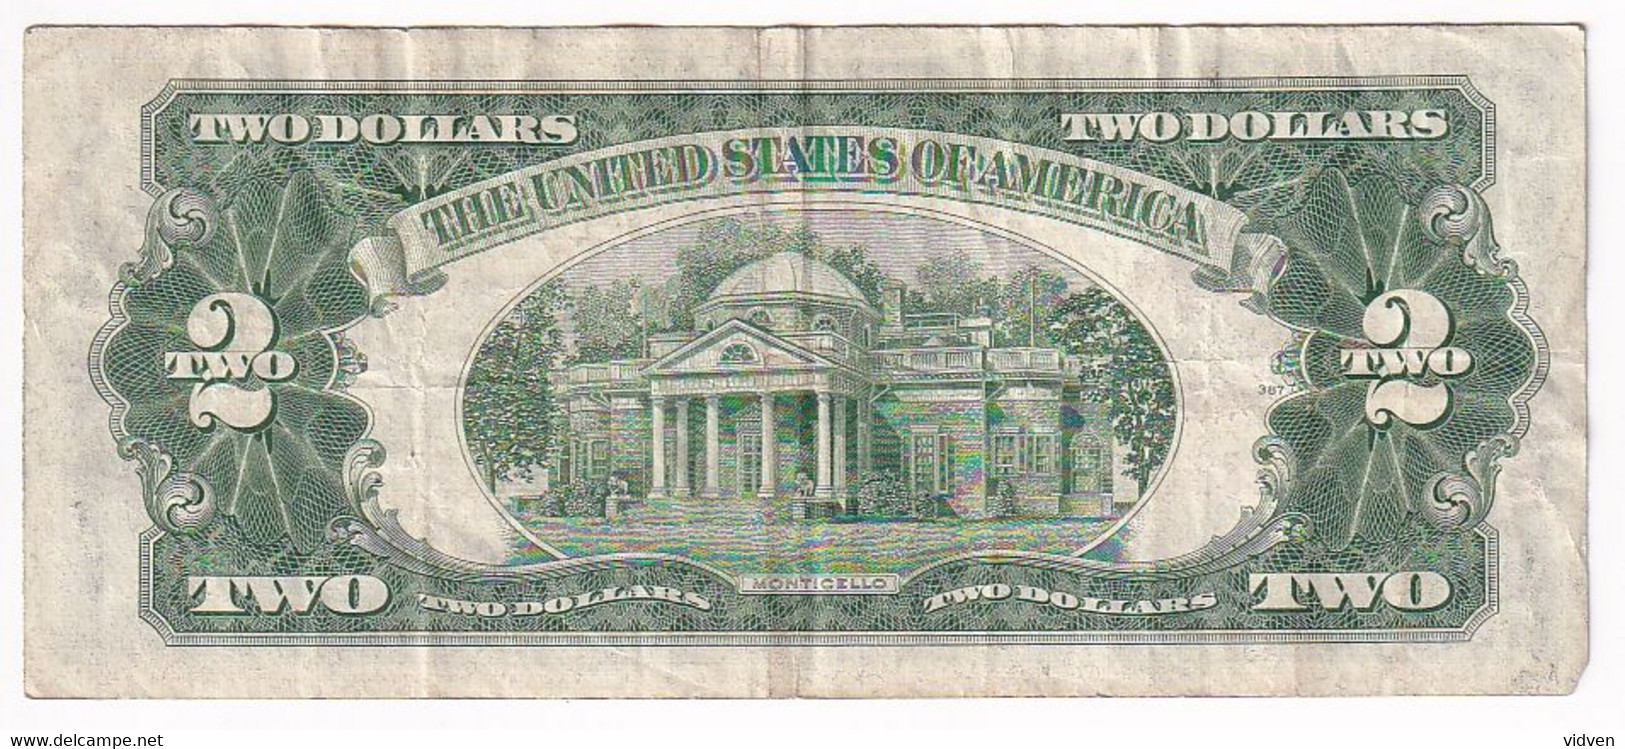 USA - $2 DOLLARS 1928 - Biljetten Van De Verenigde Staten (1928-1953)